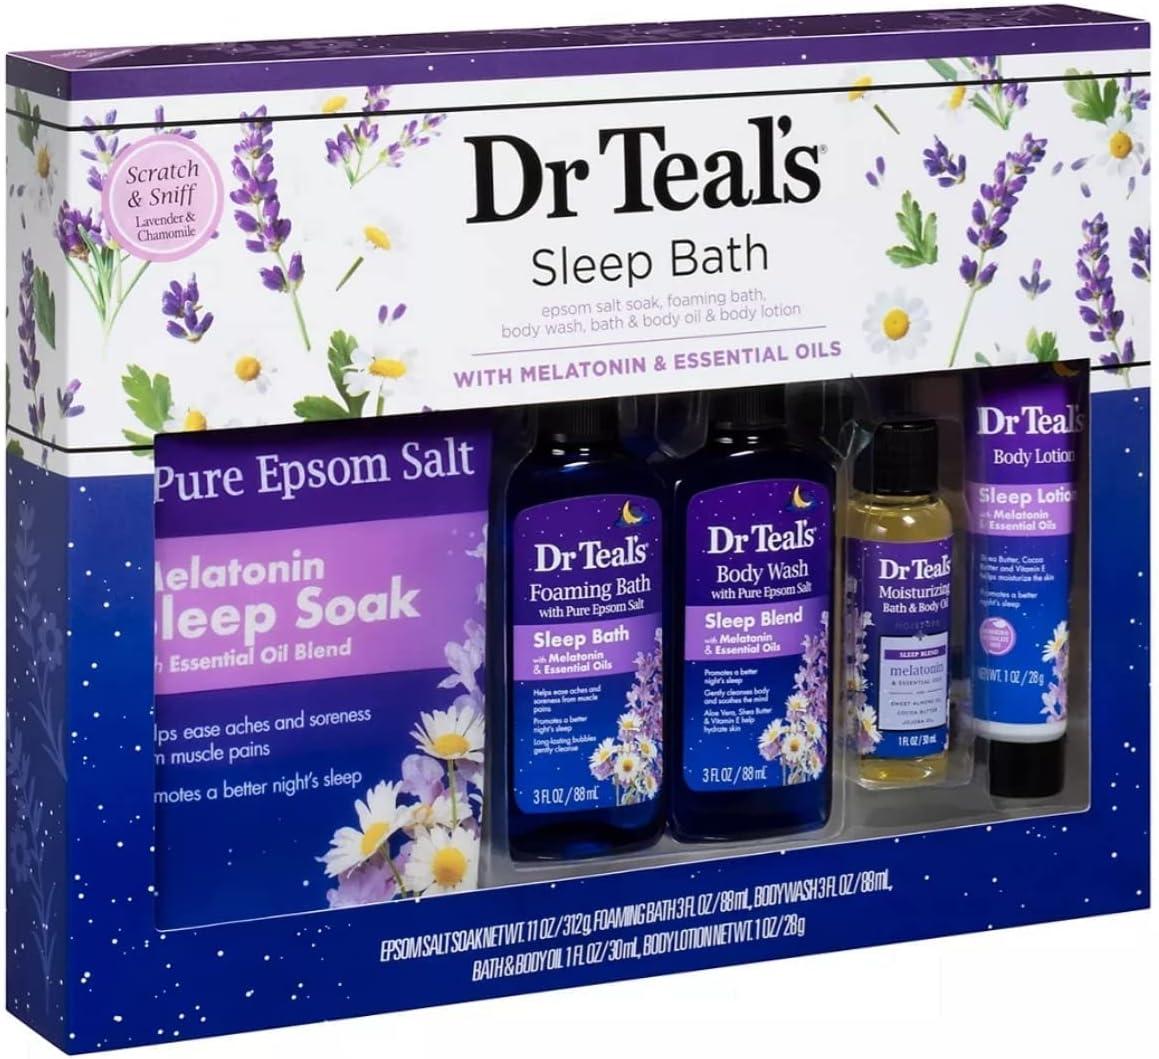  Dr. Teal's Bath Tea - Soothing Lavender Bath Soaks - 3